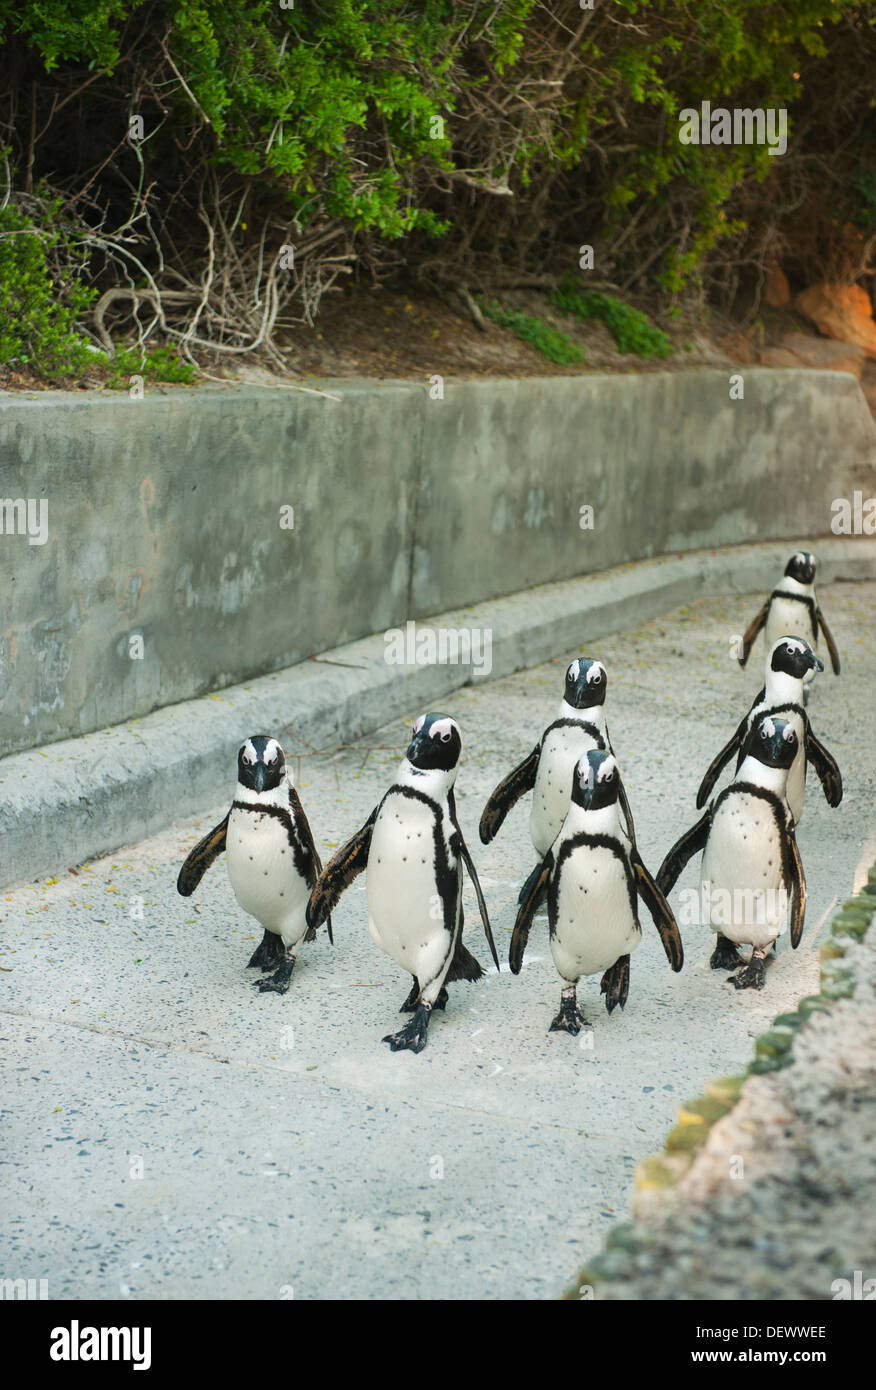 Pinguino africano (Spheniscus demersus) Selvatica, salire a piedi a percorso di calcestruzzo, Boulders Beach, Cape Peninsula, Africa del Sud in via di estinzione Foto Stock